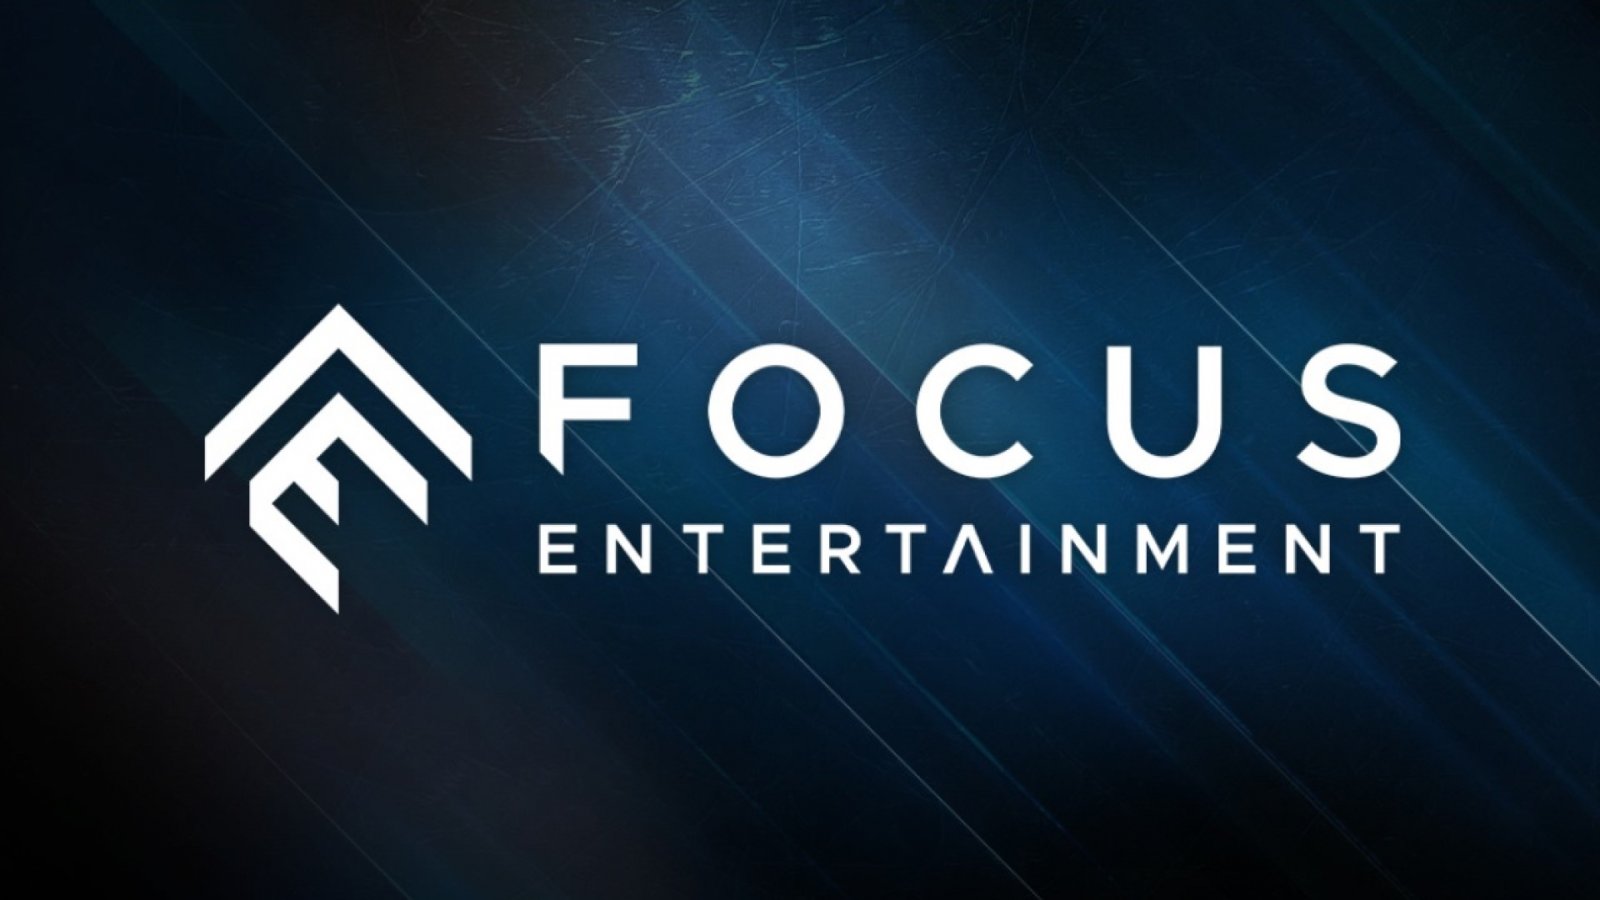 Focus Entertanment nomina CEO Sean Brennan, per 'accelerare la crescita e sviluppare nuove IP'